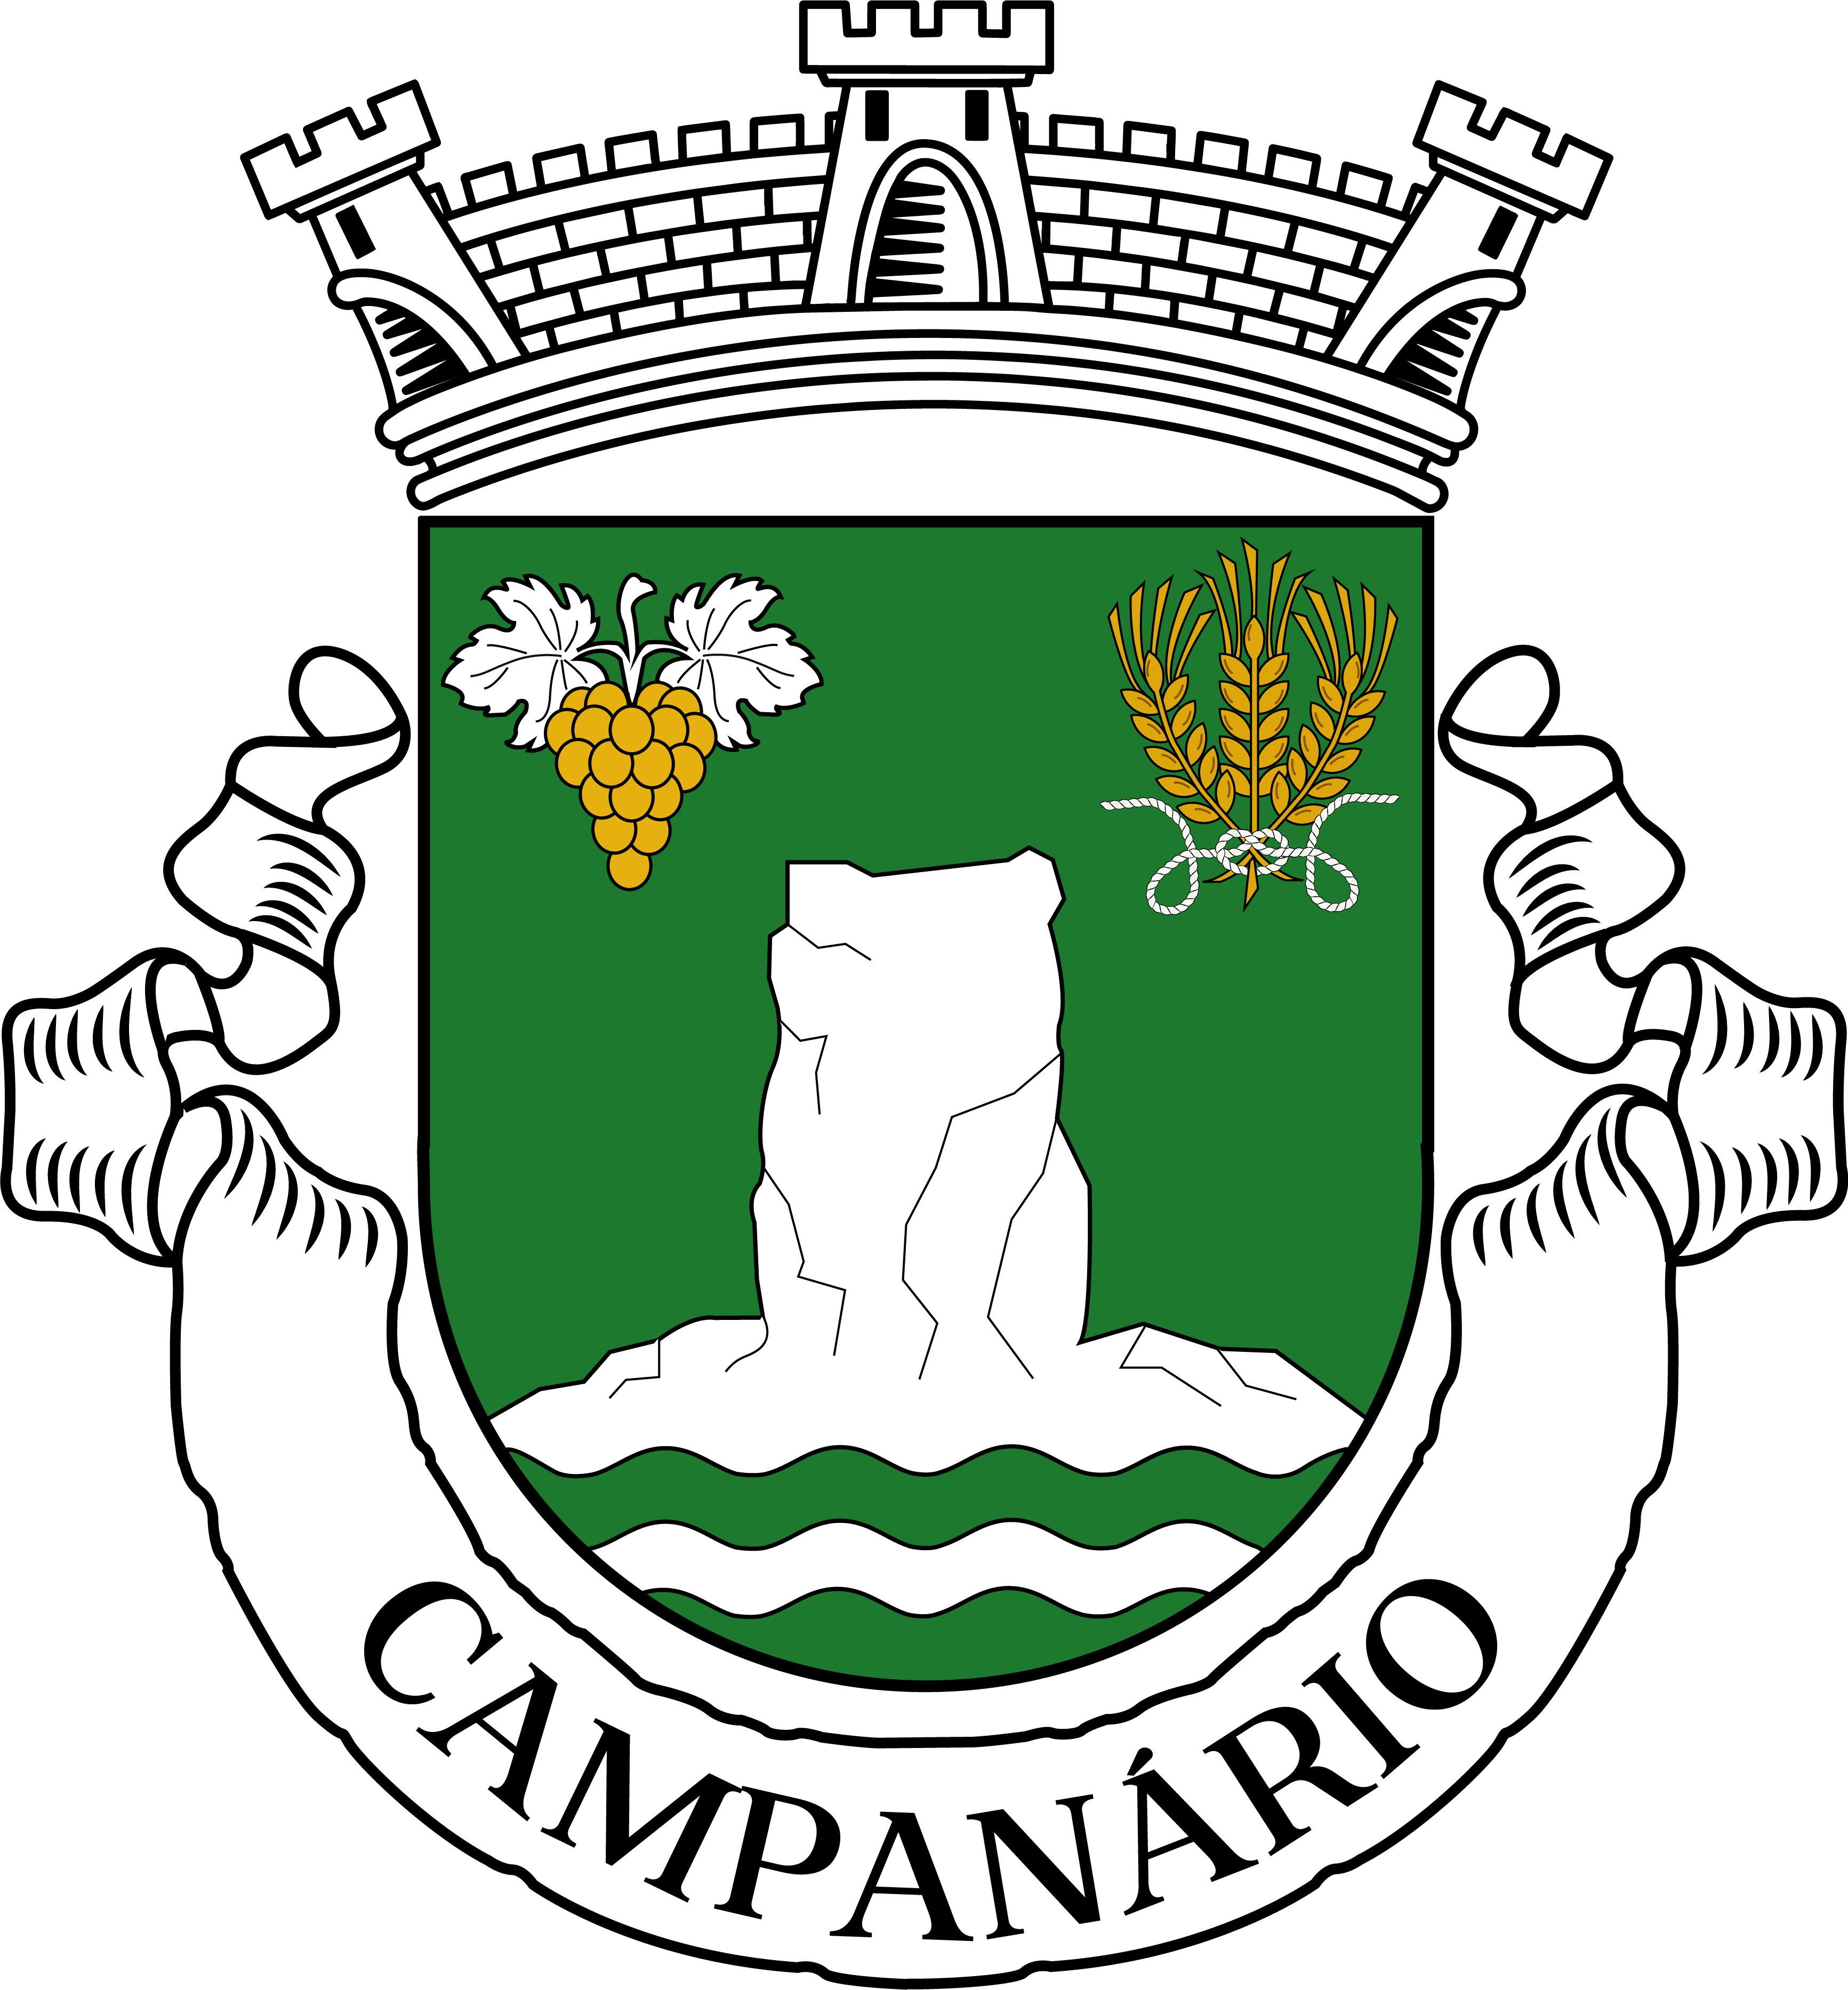 cropped-jf-campanario-logo-vetor-1-1-2.png